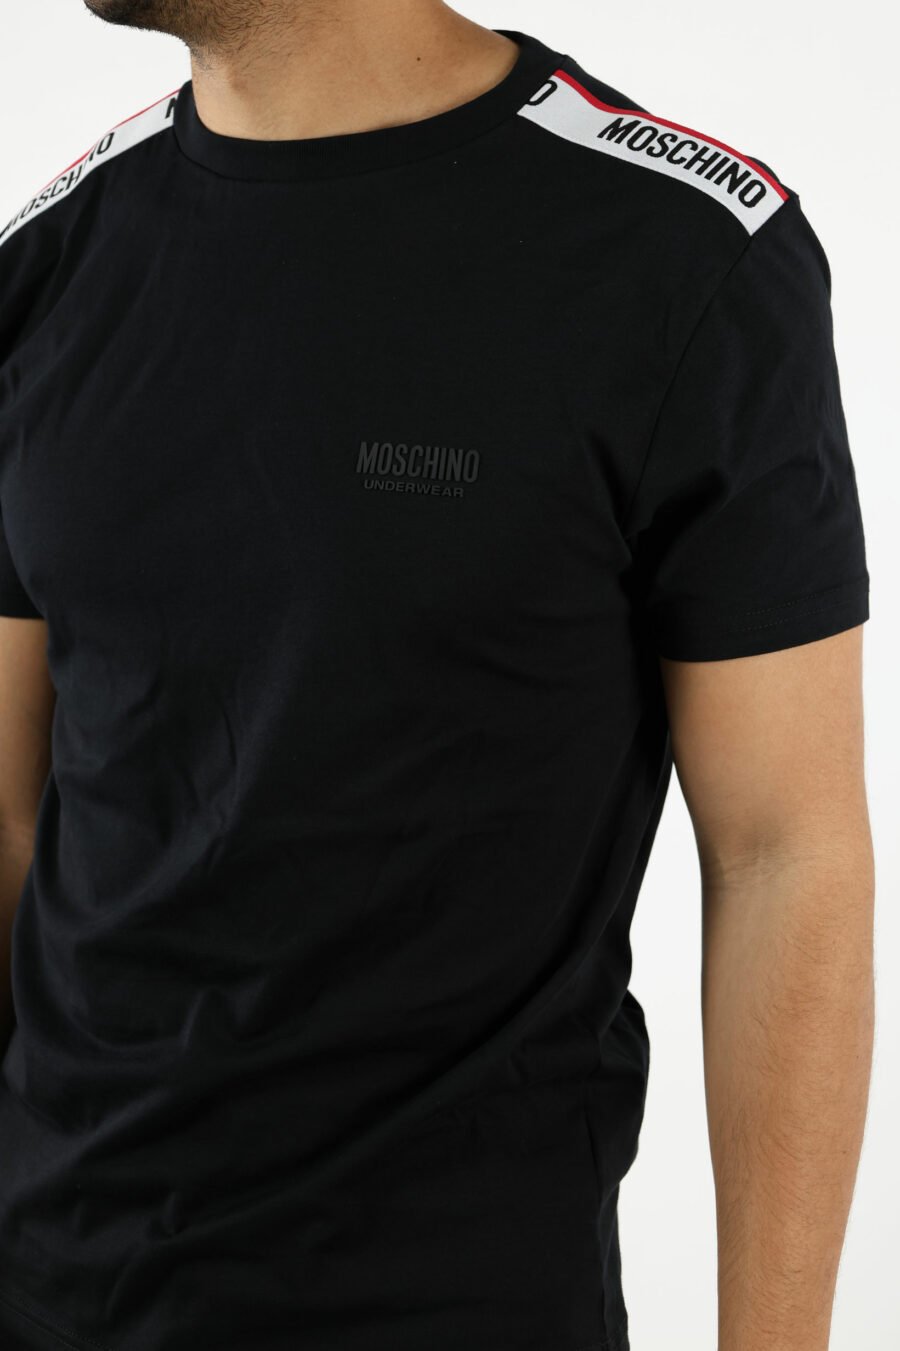 T-shirt preta com logótipo branco e pormenor de fita vermelha nos ombros - 110981